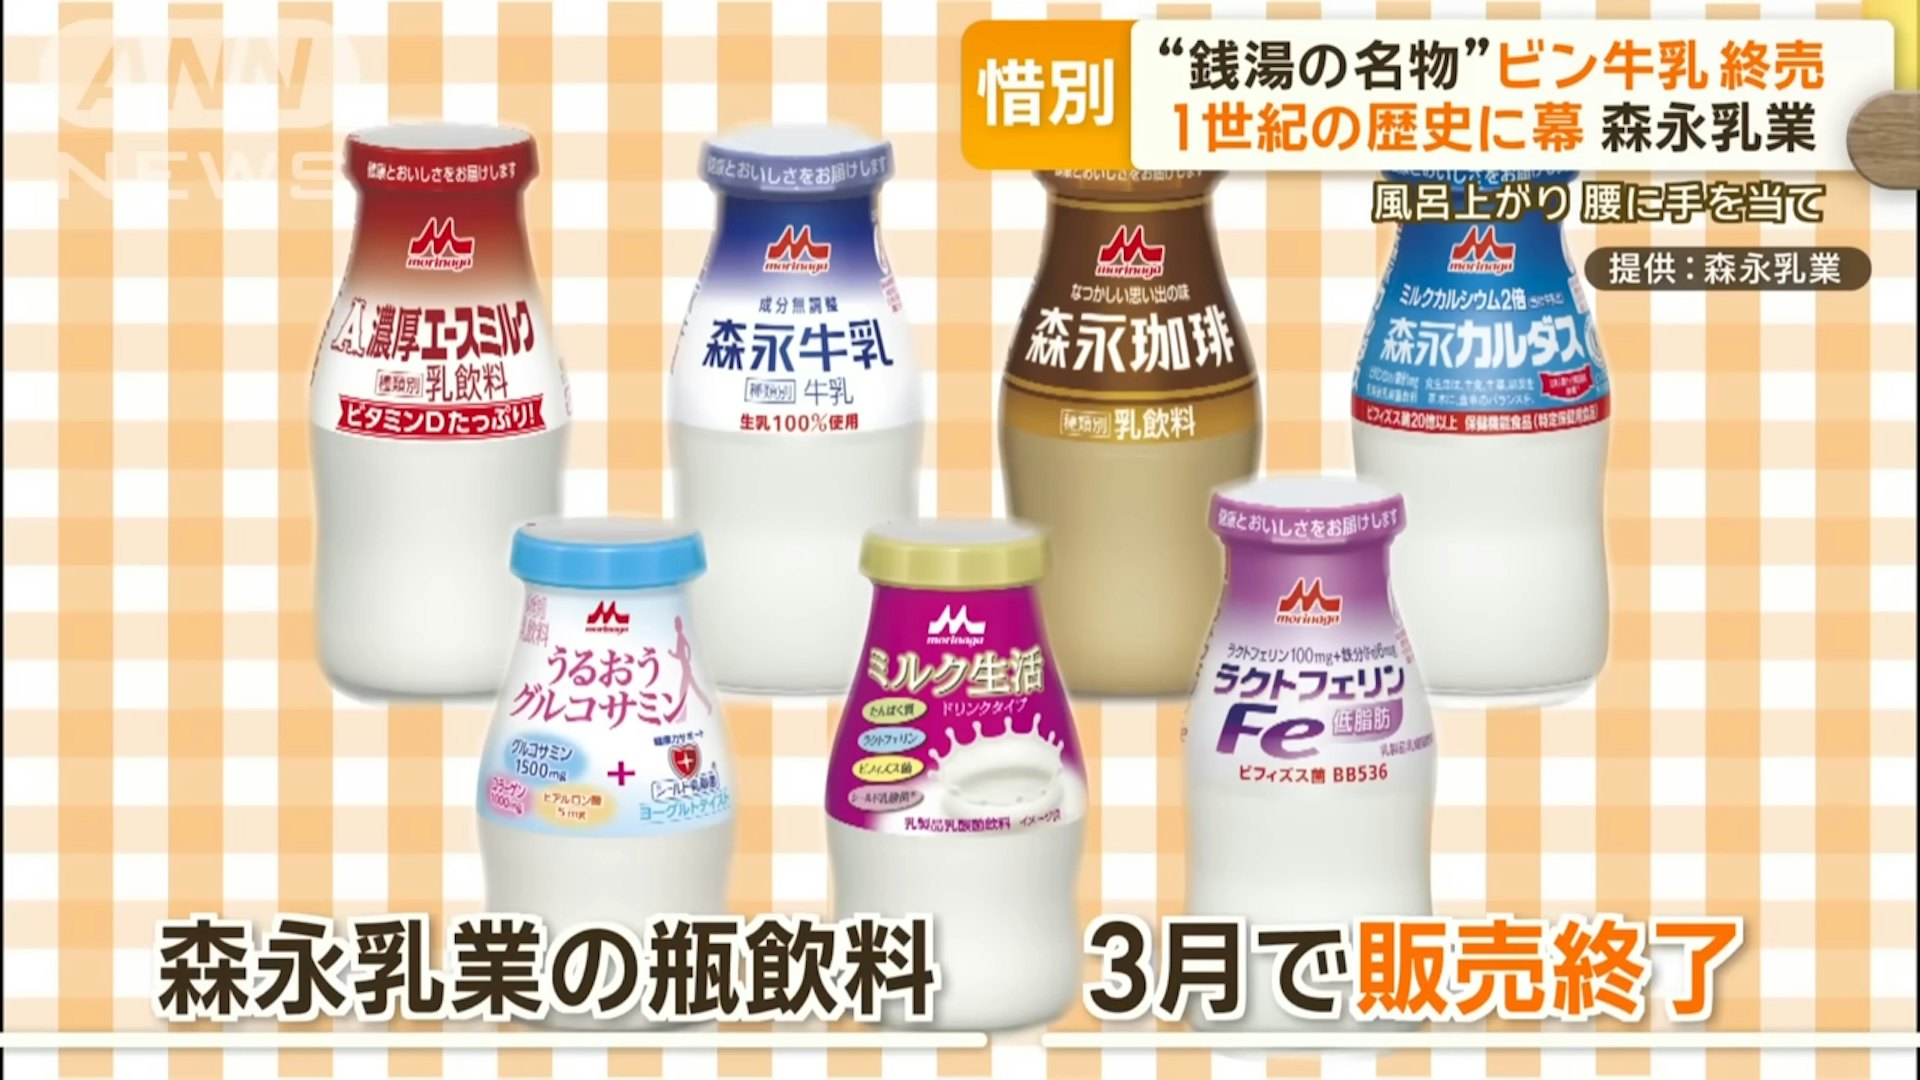 早前日本最大牛乳生產商「森永乳業」就宣佈將於3月底停產旗下共7款玻璃樽牛乳產品，當中包括原味、咖啡牛奶及高鐵質牛乳等等。（SBS新聞截圖）